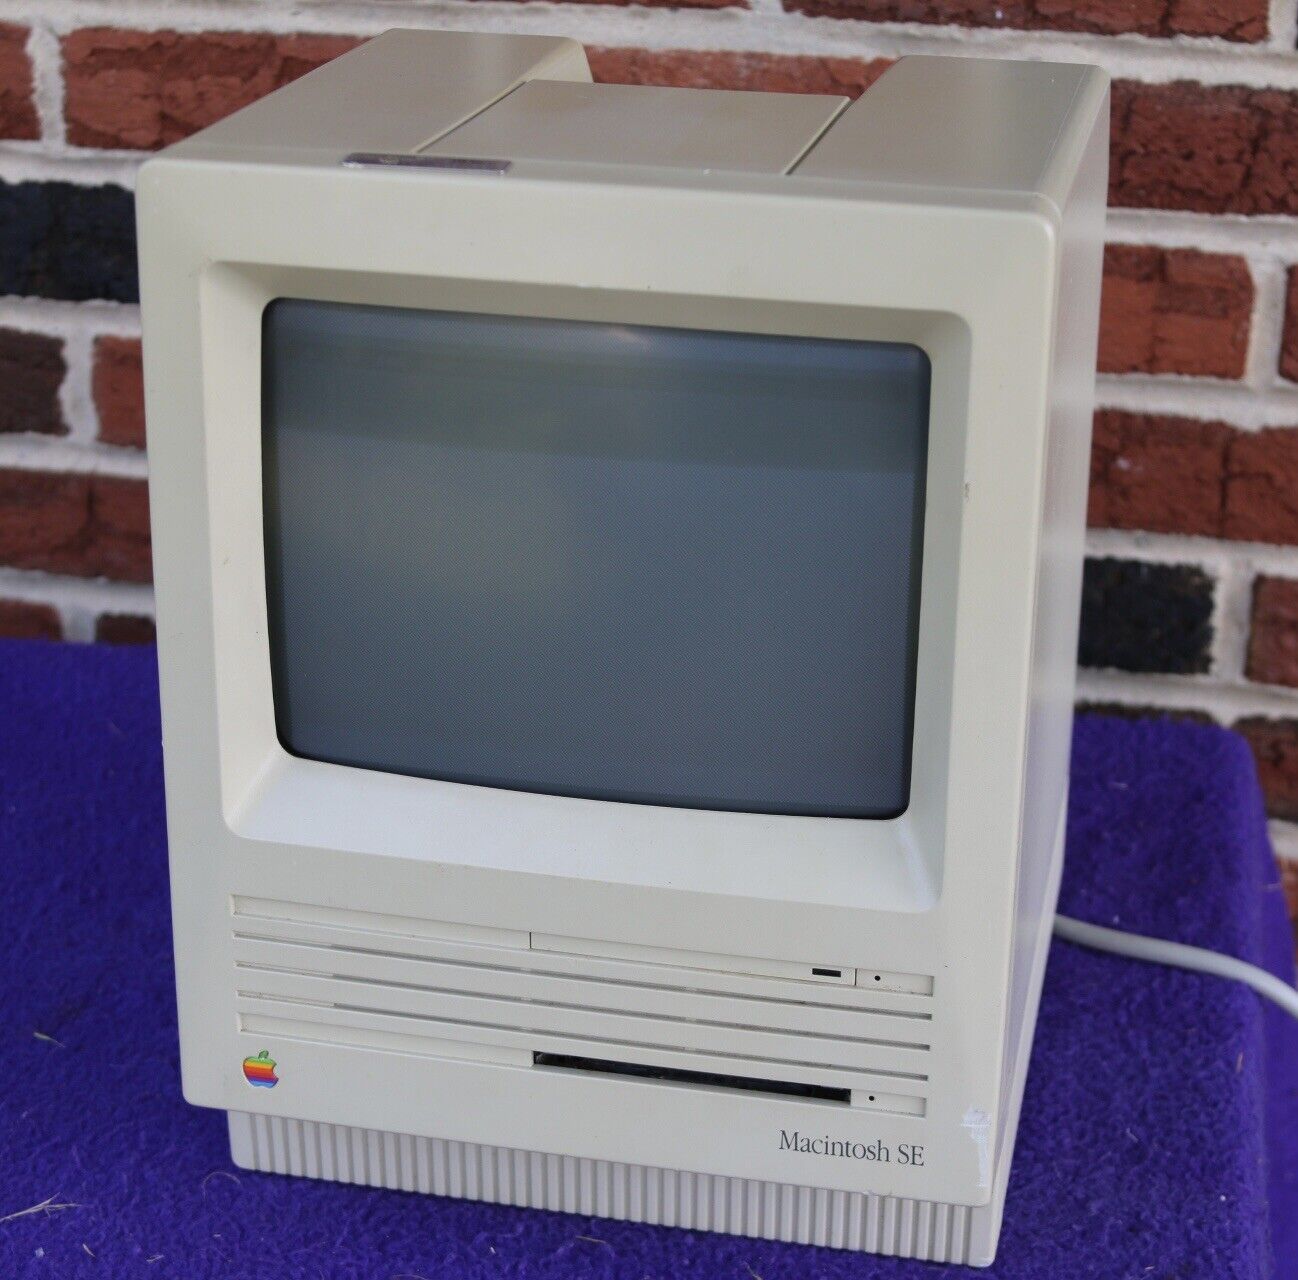 Vintage 1986 Apple Macintosh SE M5011 Computer - Power up - Hard disk erased